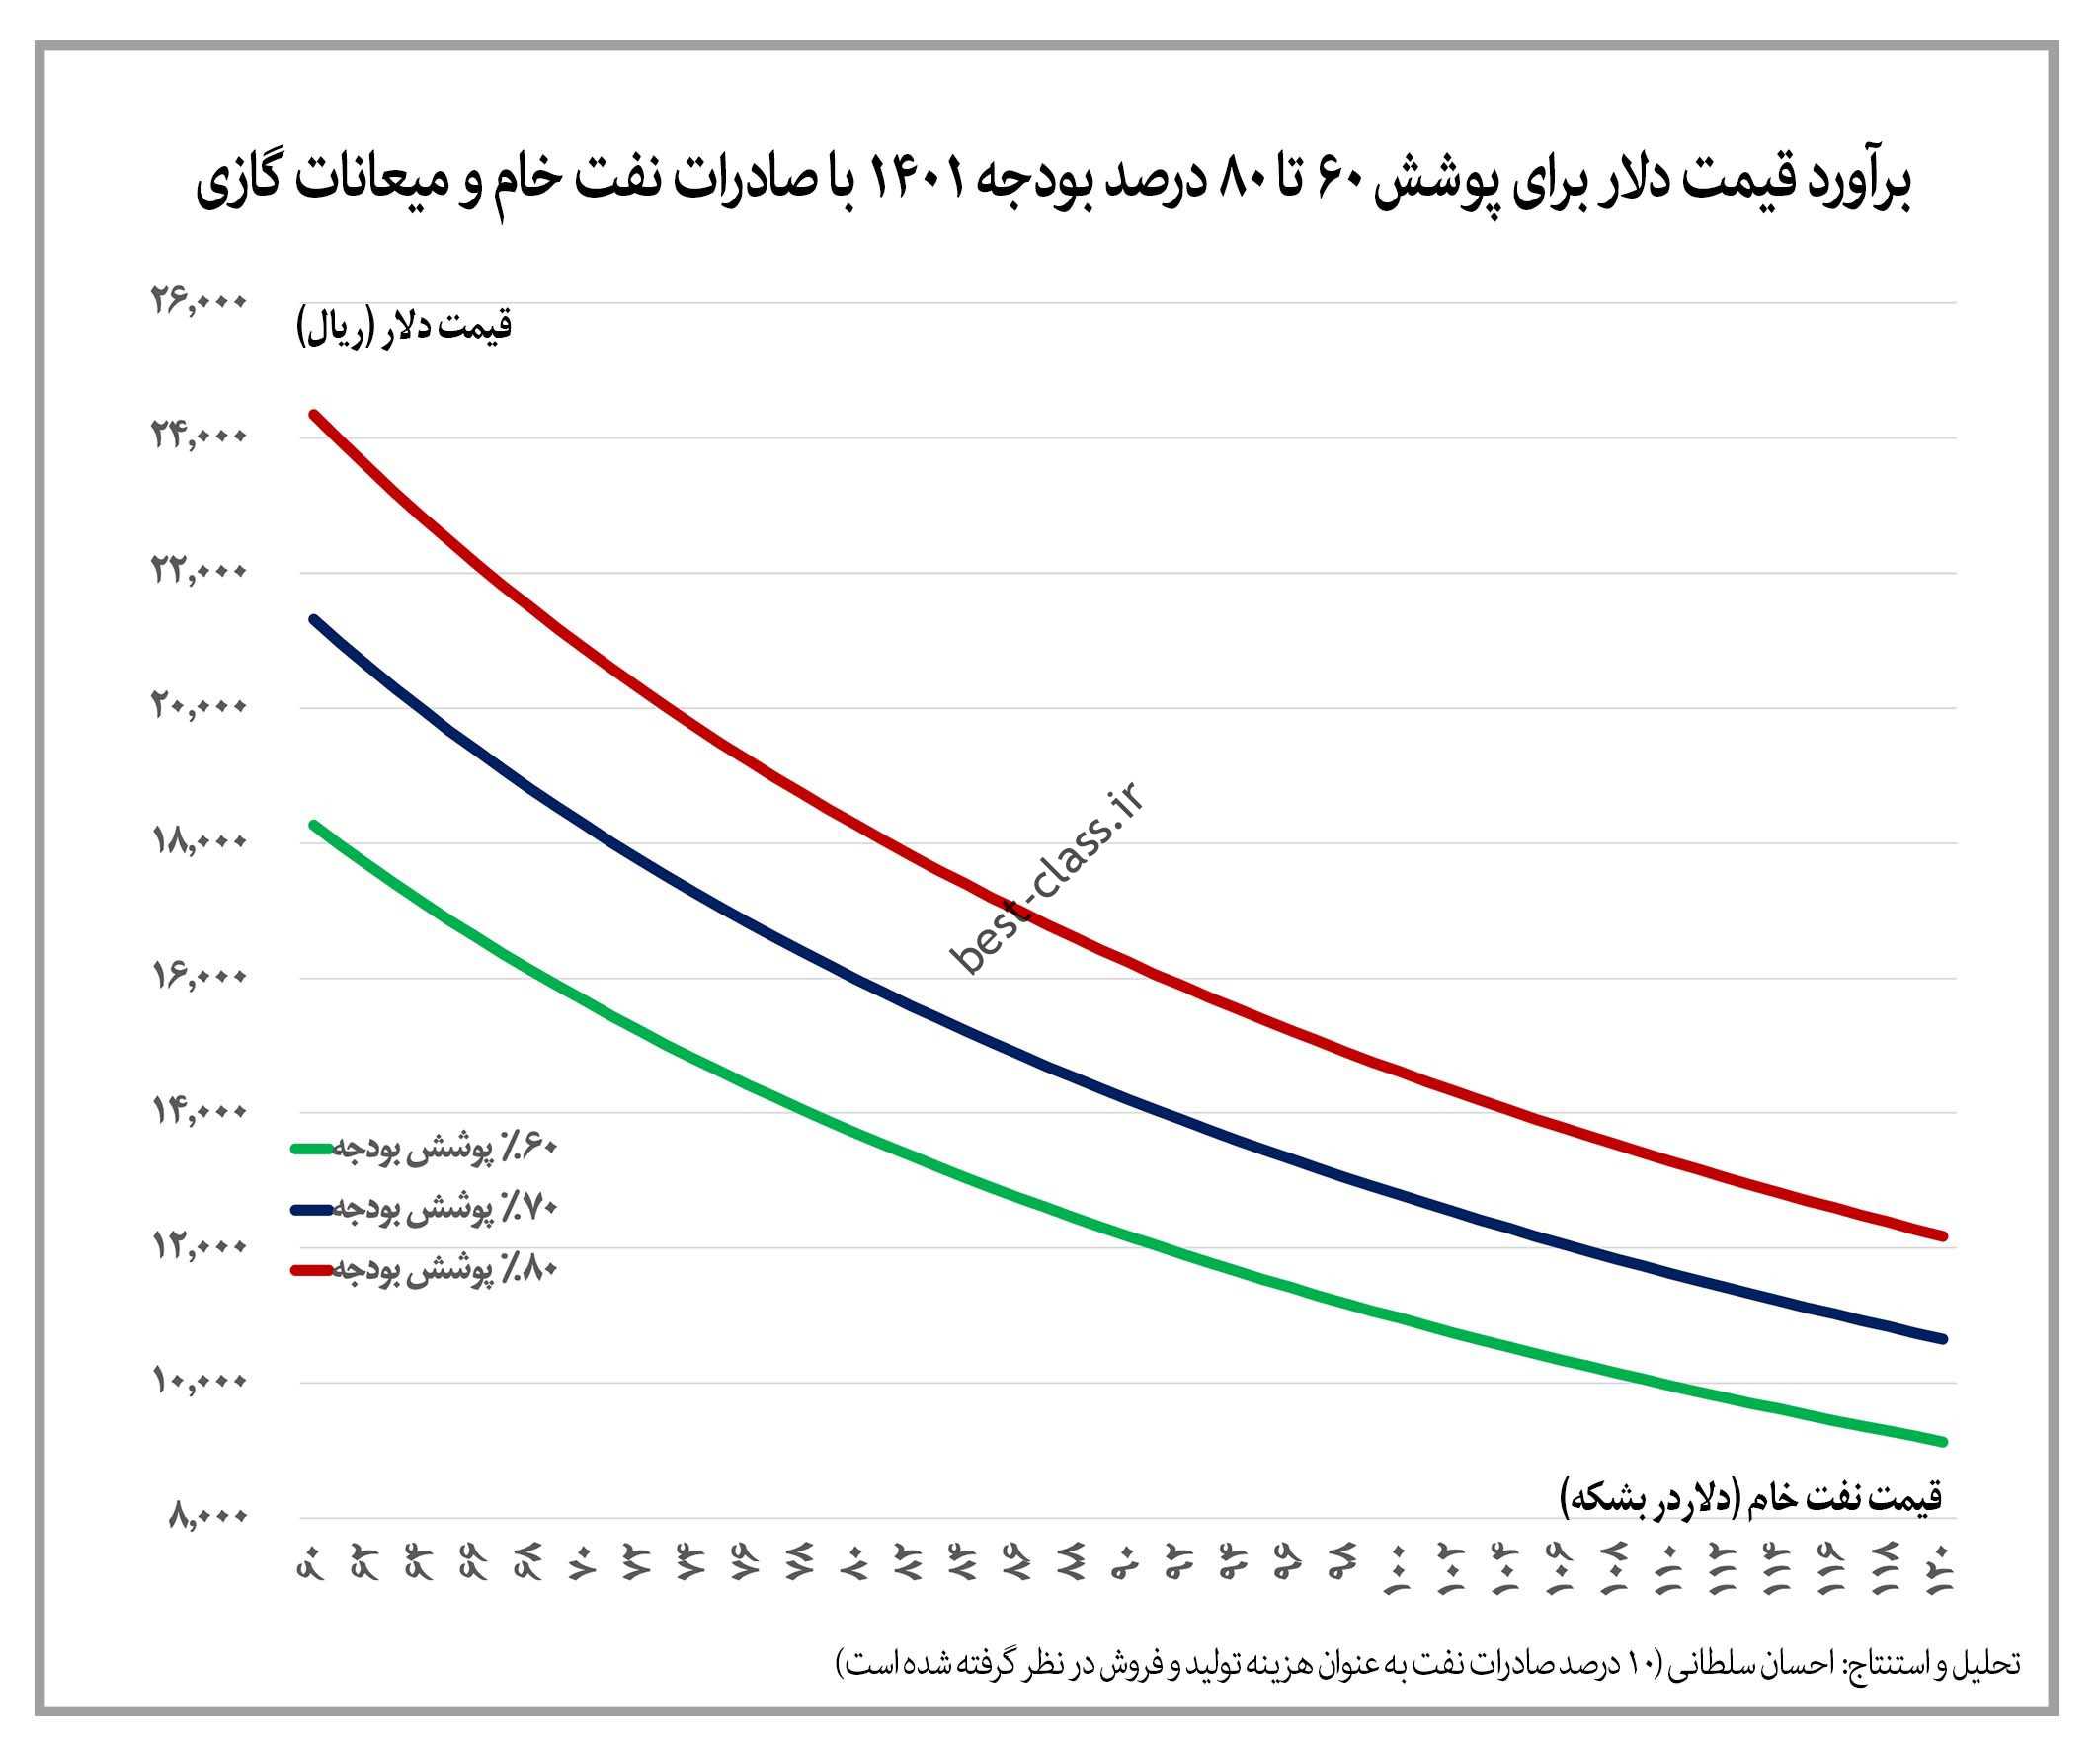 افزایش بیش از 10 برابری ارزش ریالی صادرات نفت خام ایران قبل از تحریم ها